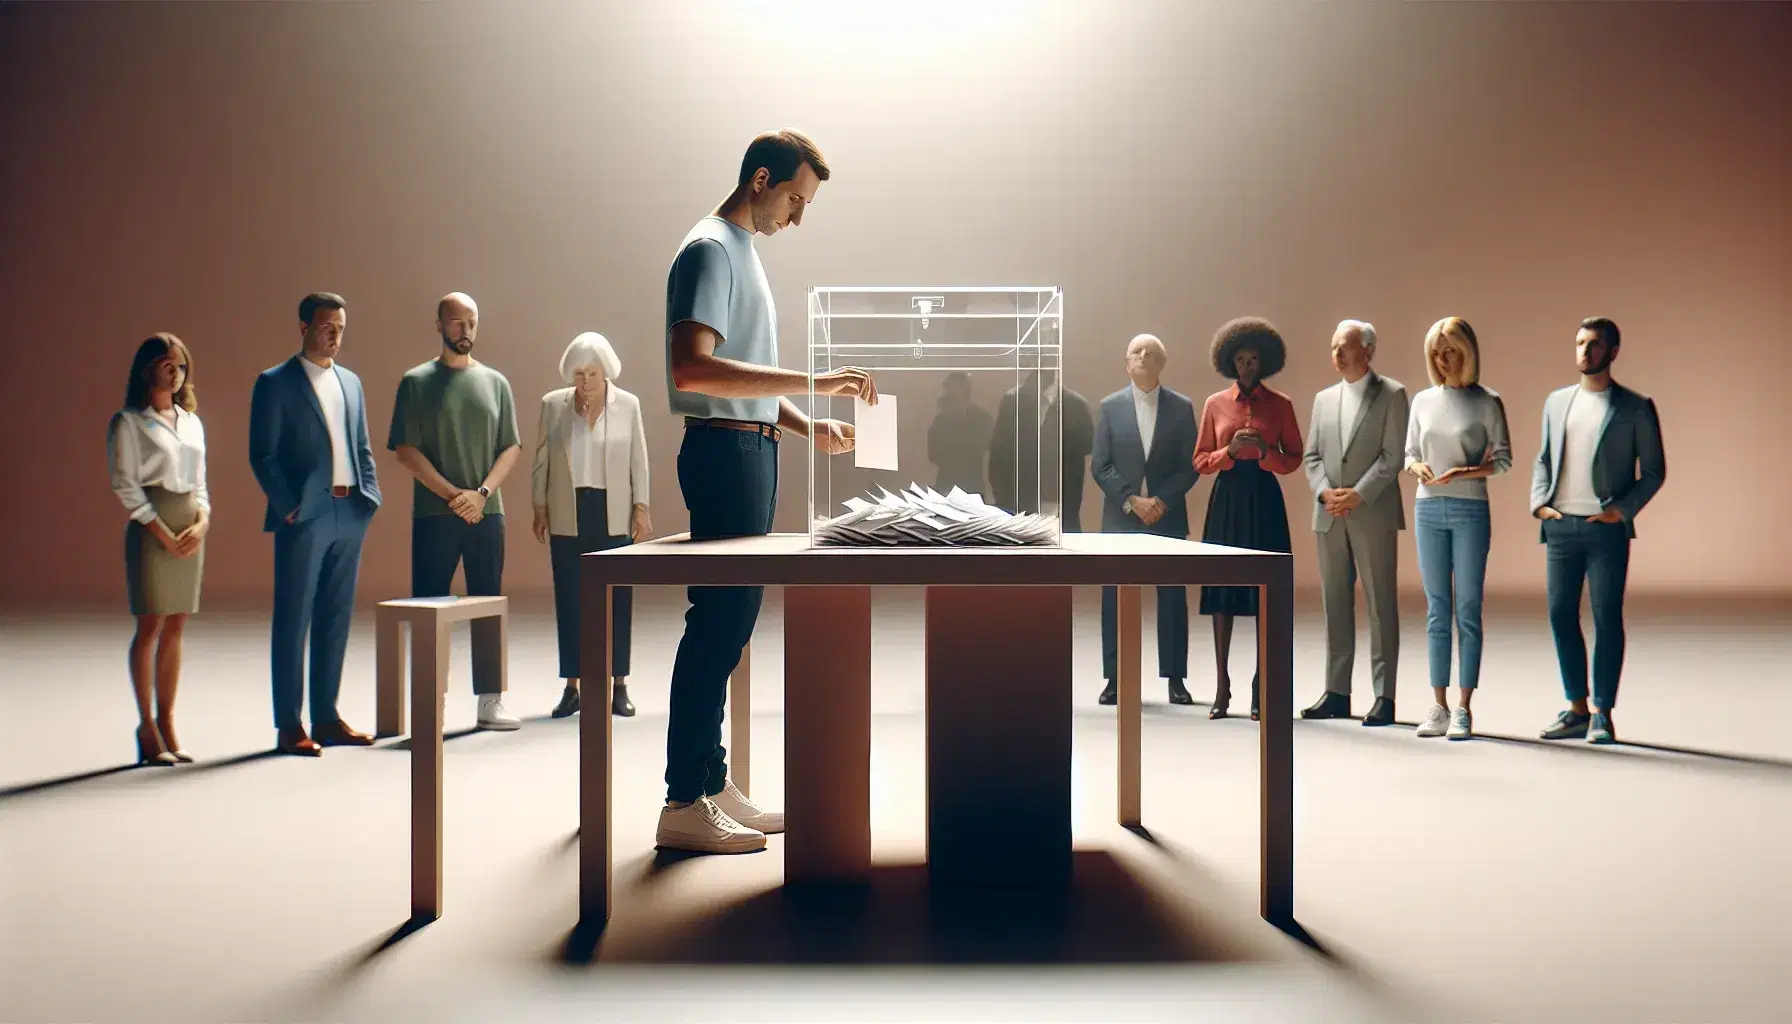 Grupo diverso de personas votando alrededor de una urna transparente en una mesa marrón claro, enfocando el acto cívico de participación.